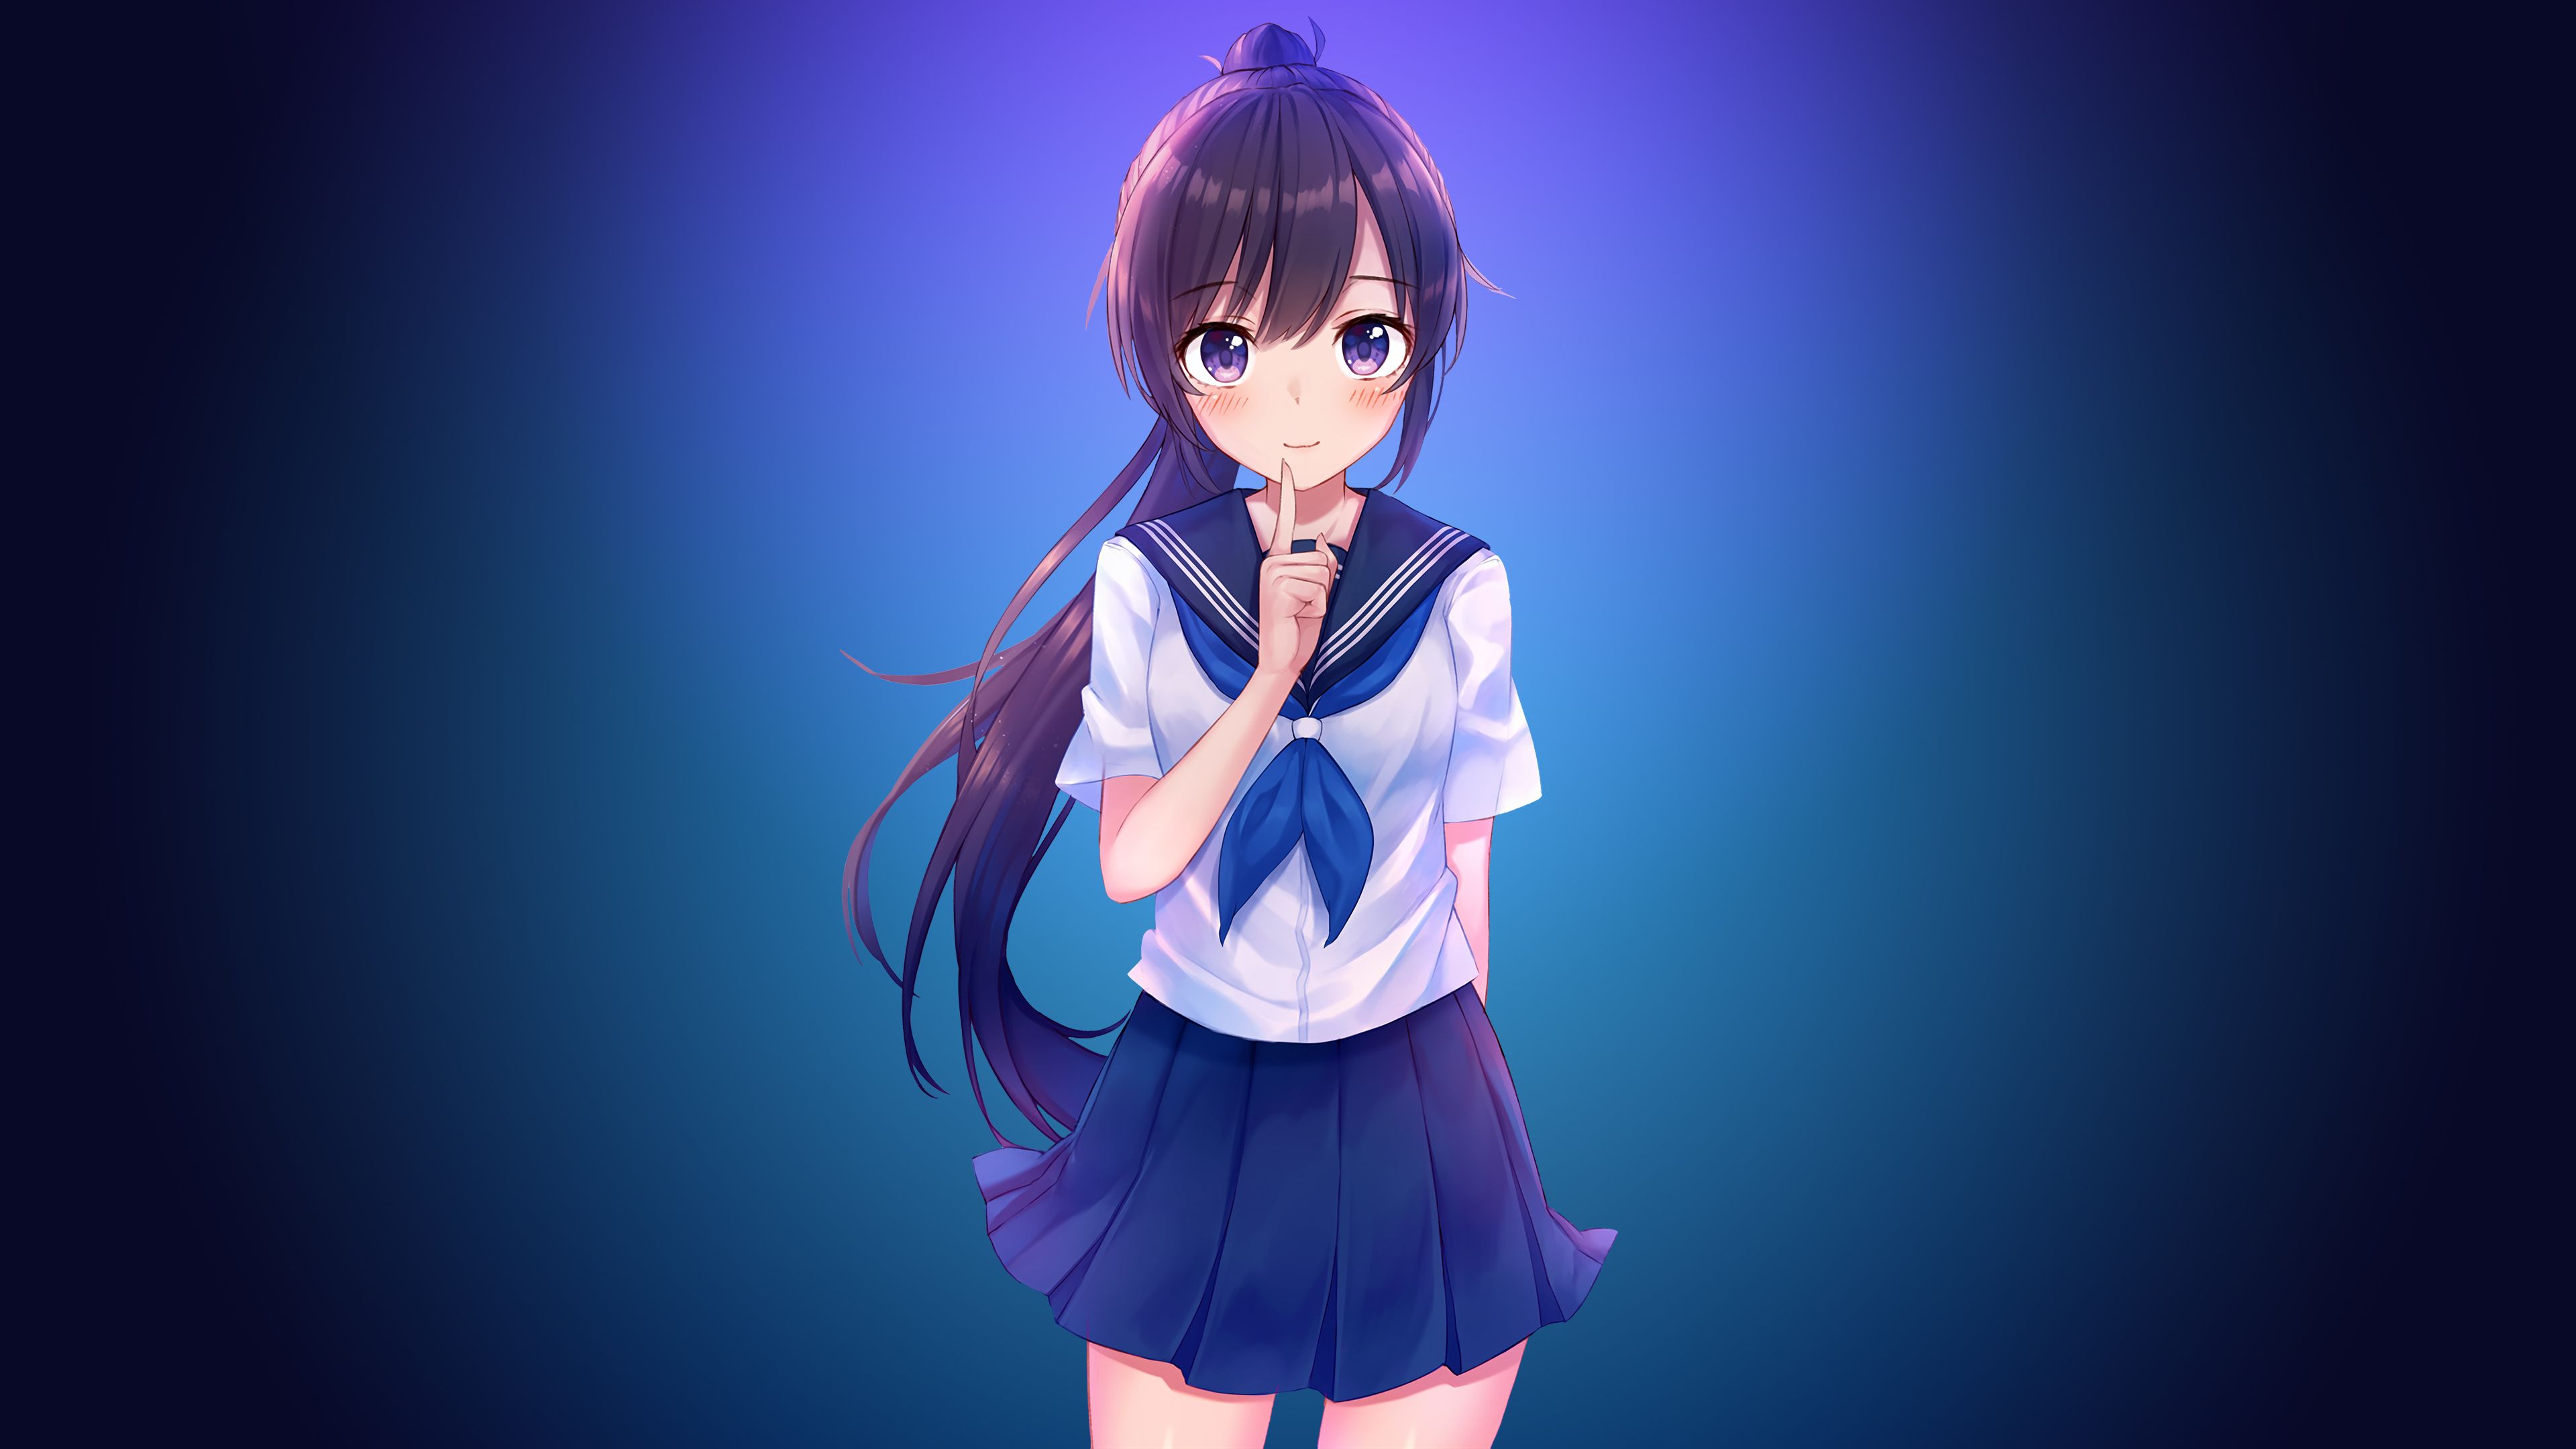 School Girl Anime 4k, HD Anime, 4k Wallpaper, Image, Background